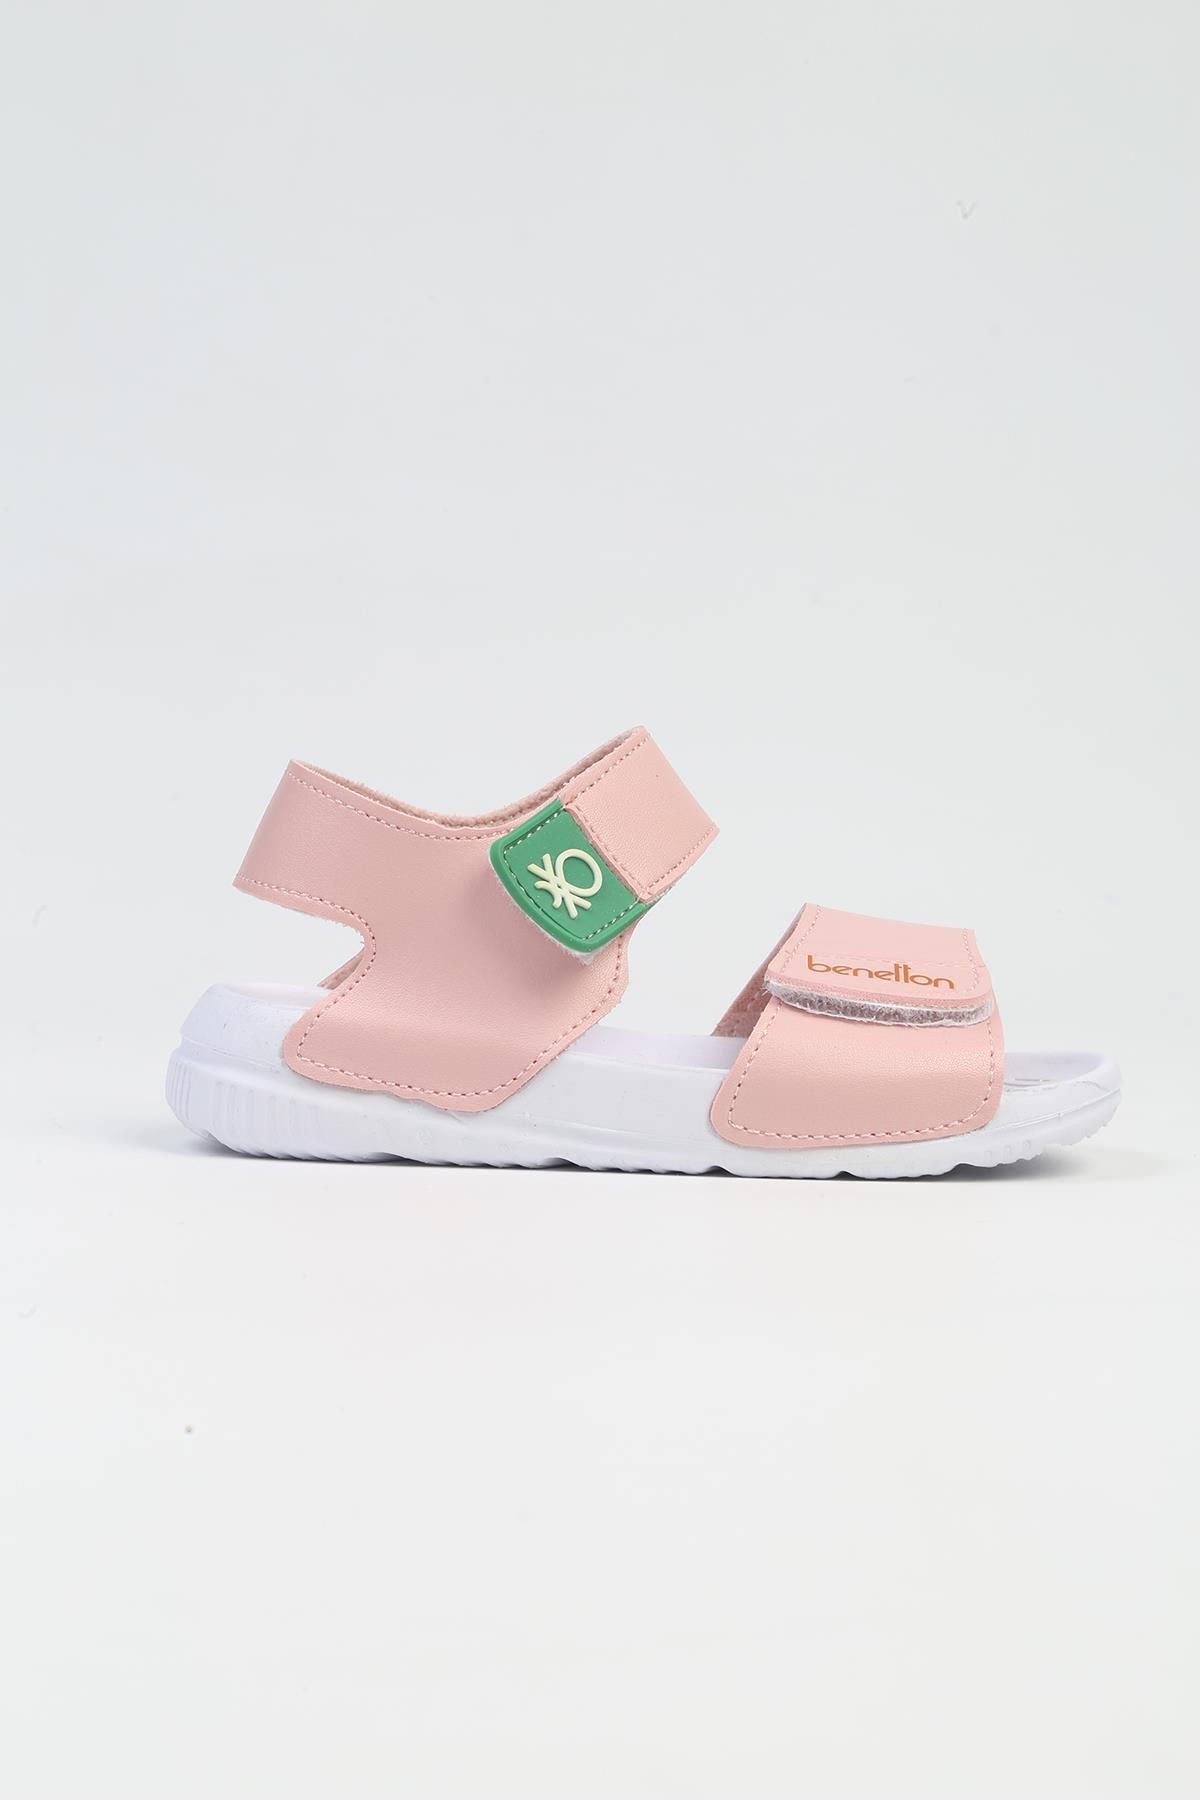 Benetton ® | BN-1252- 3610 Pudra-Çocuk Sandalet